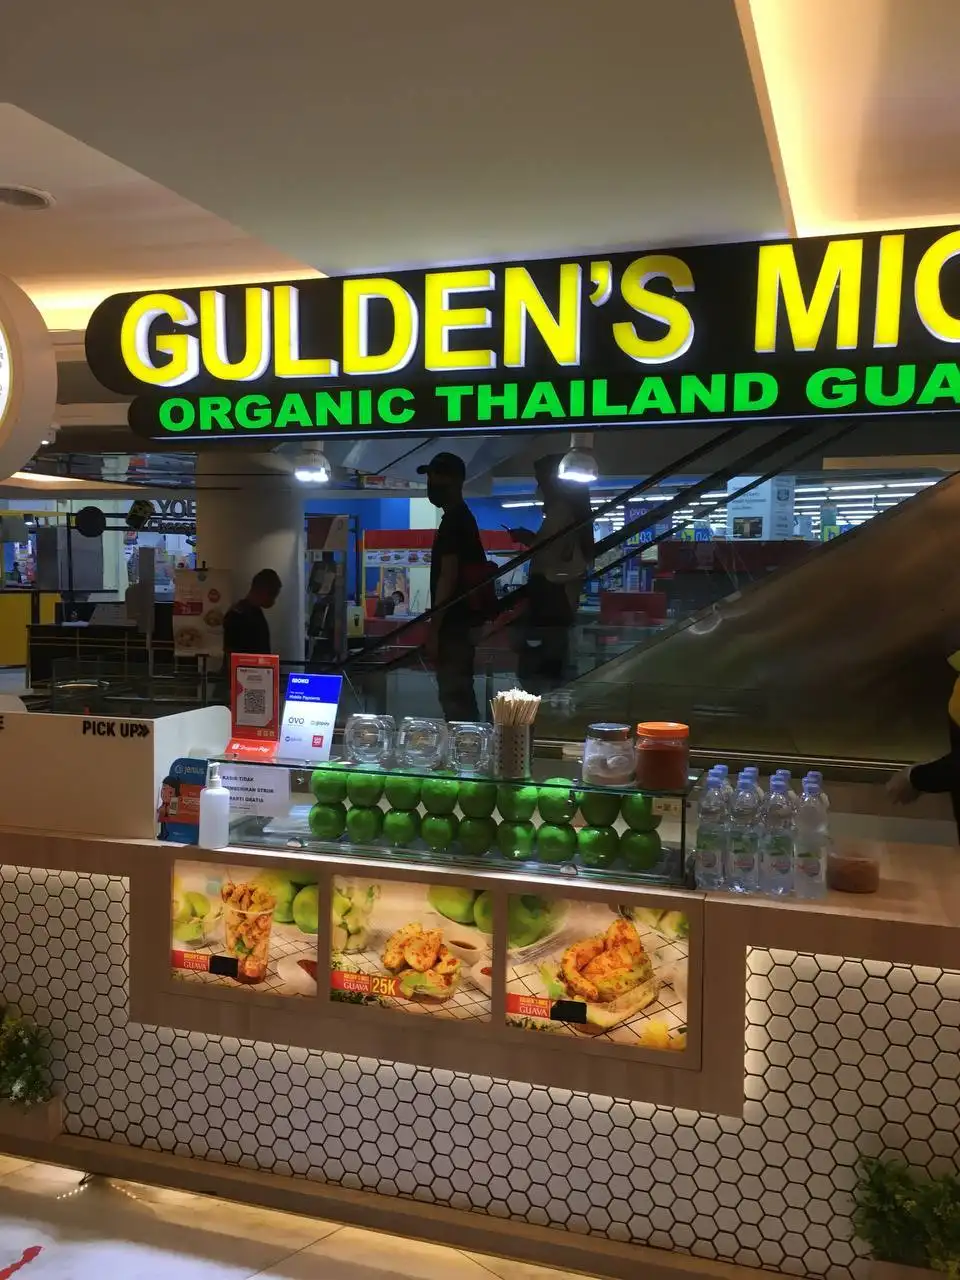 Gulden's Mice